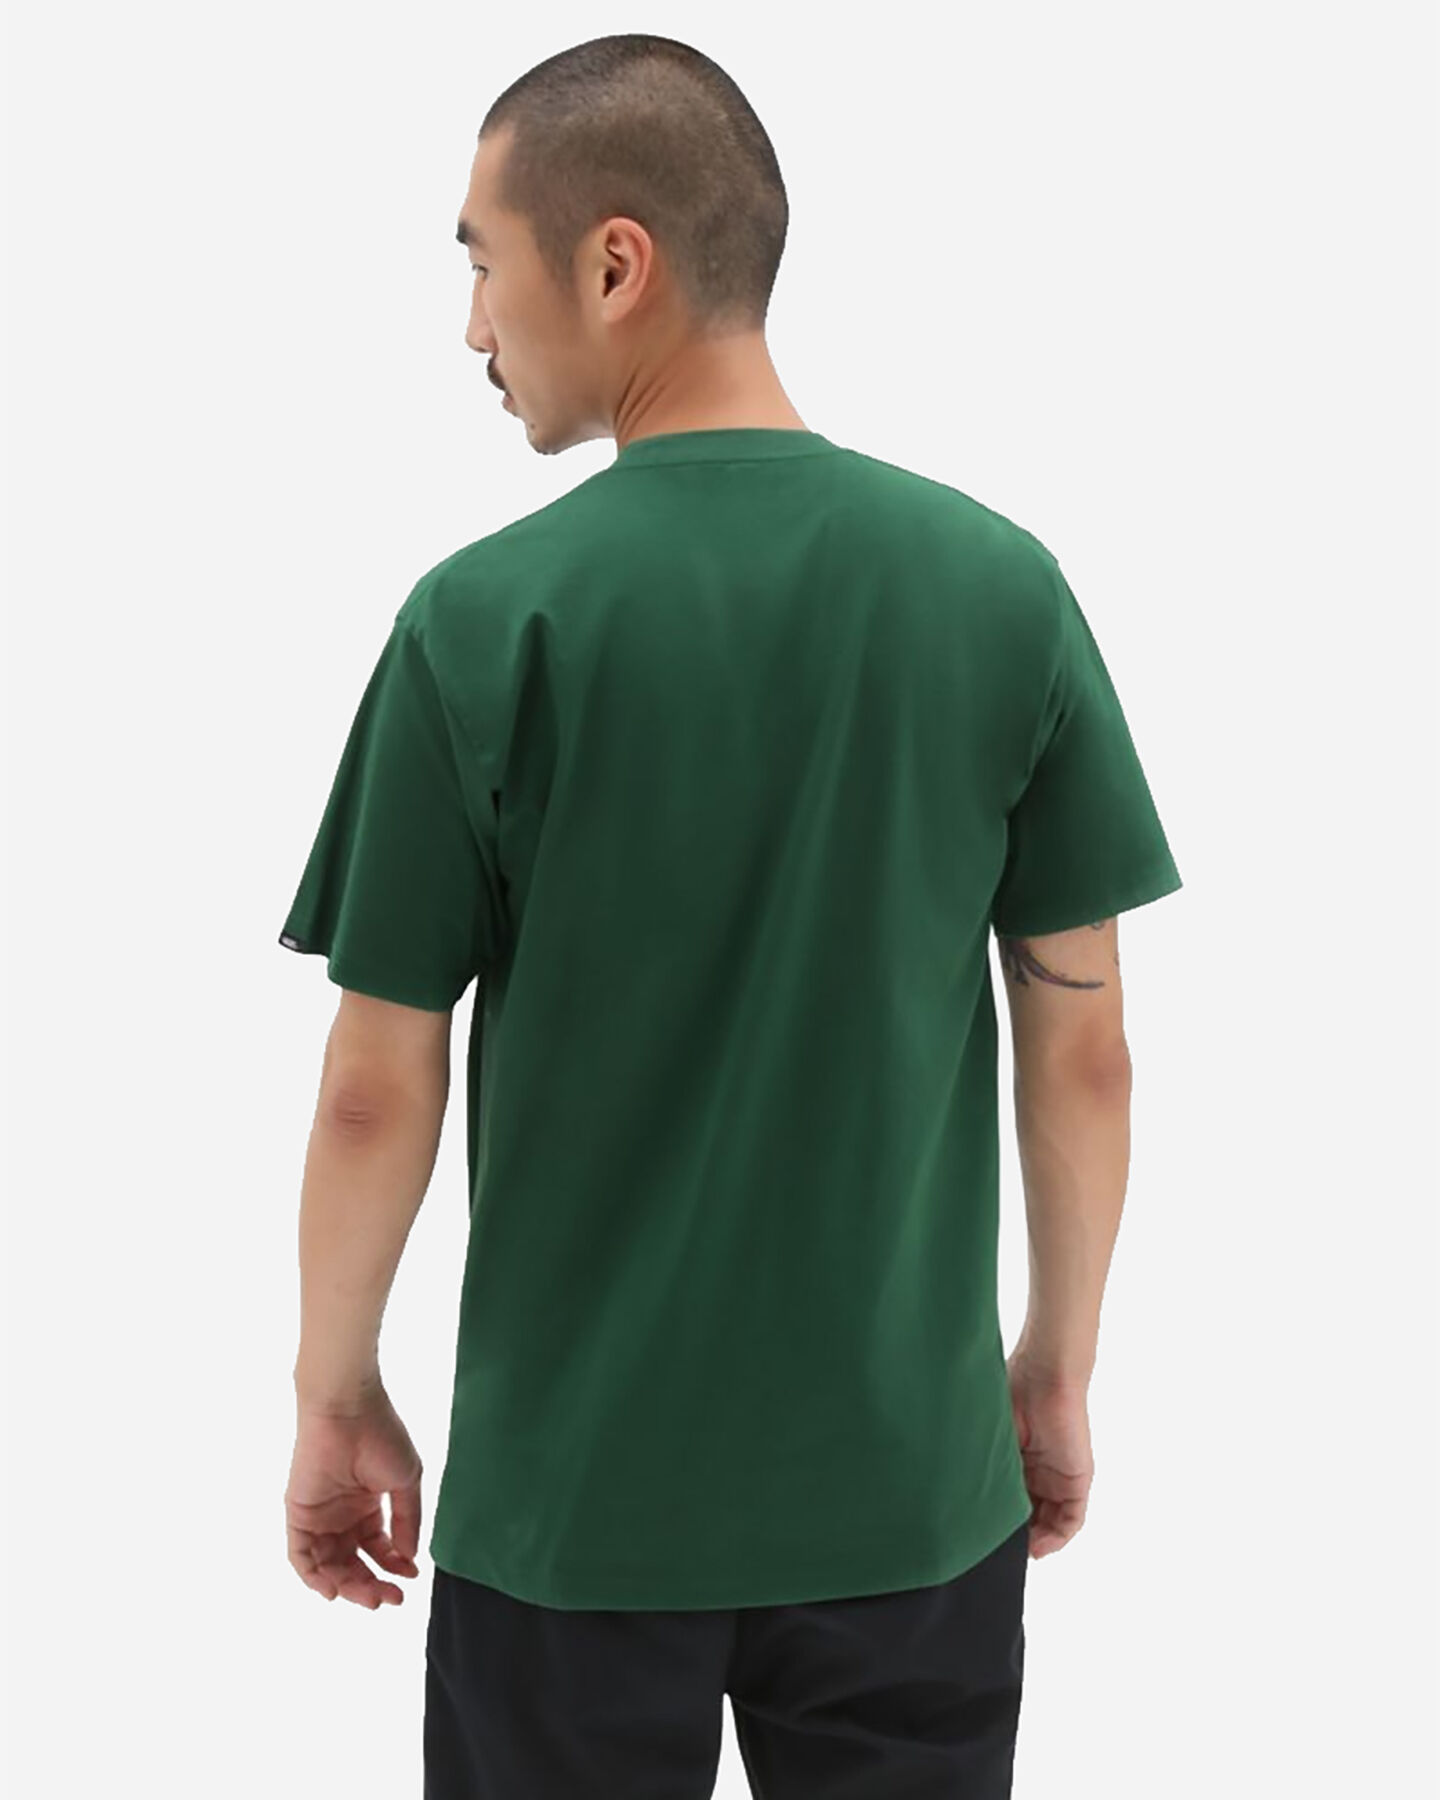  T-Shirt VANS BONES M S5555264|07W|S scatto 1